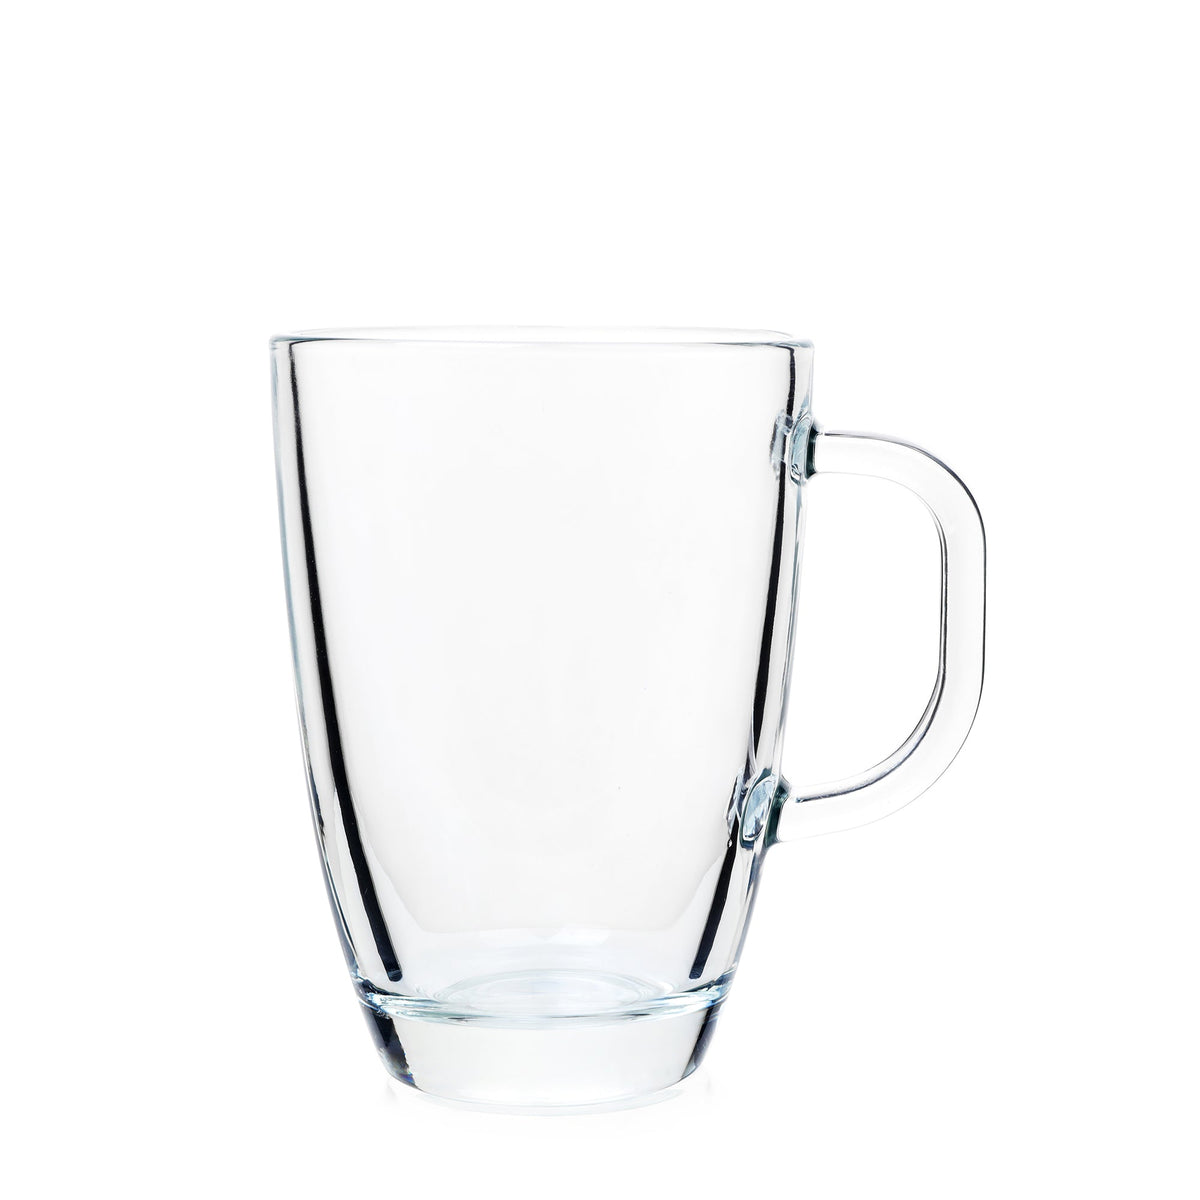 EXPRESS Glass Mugs - Set of 4